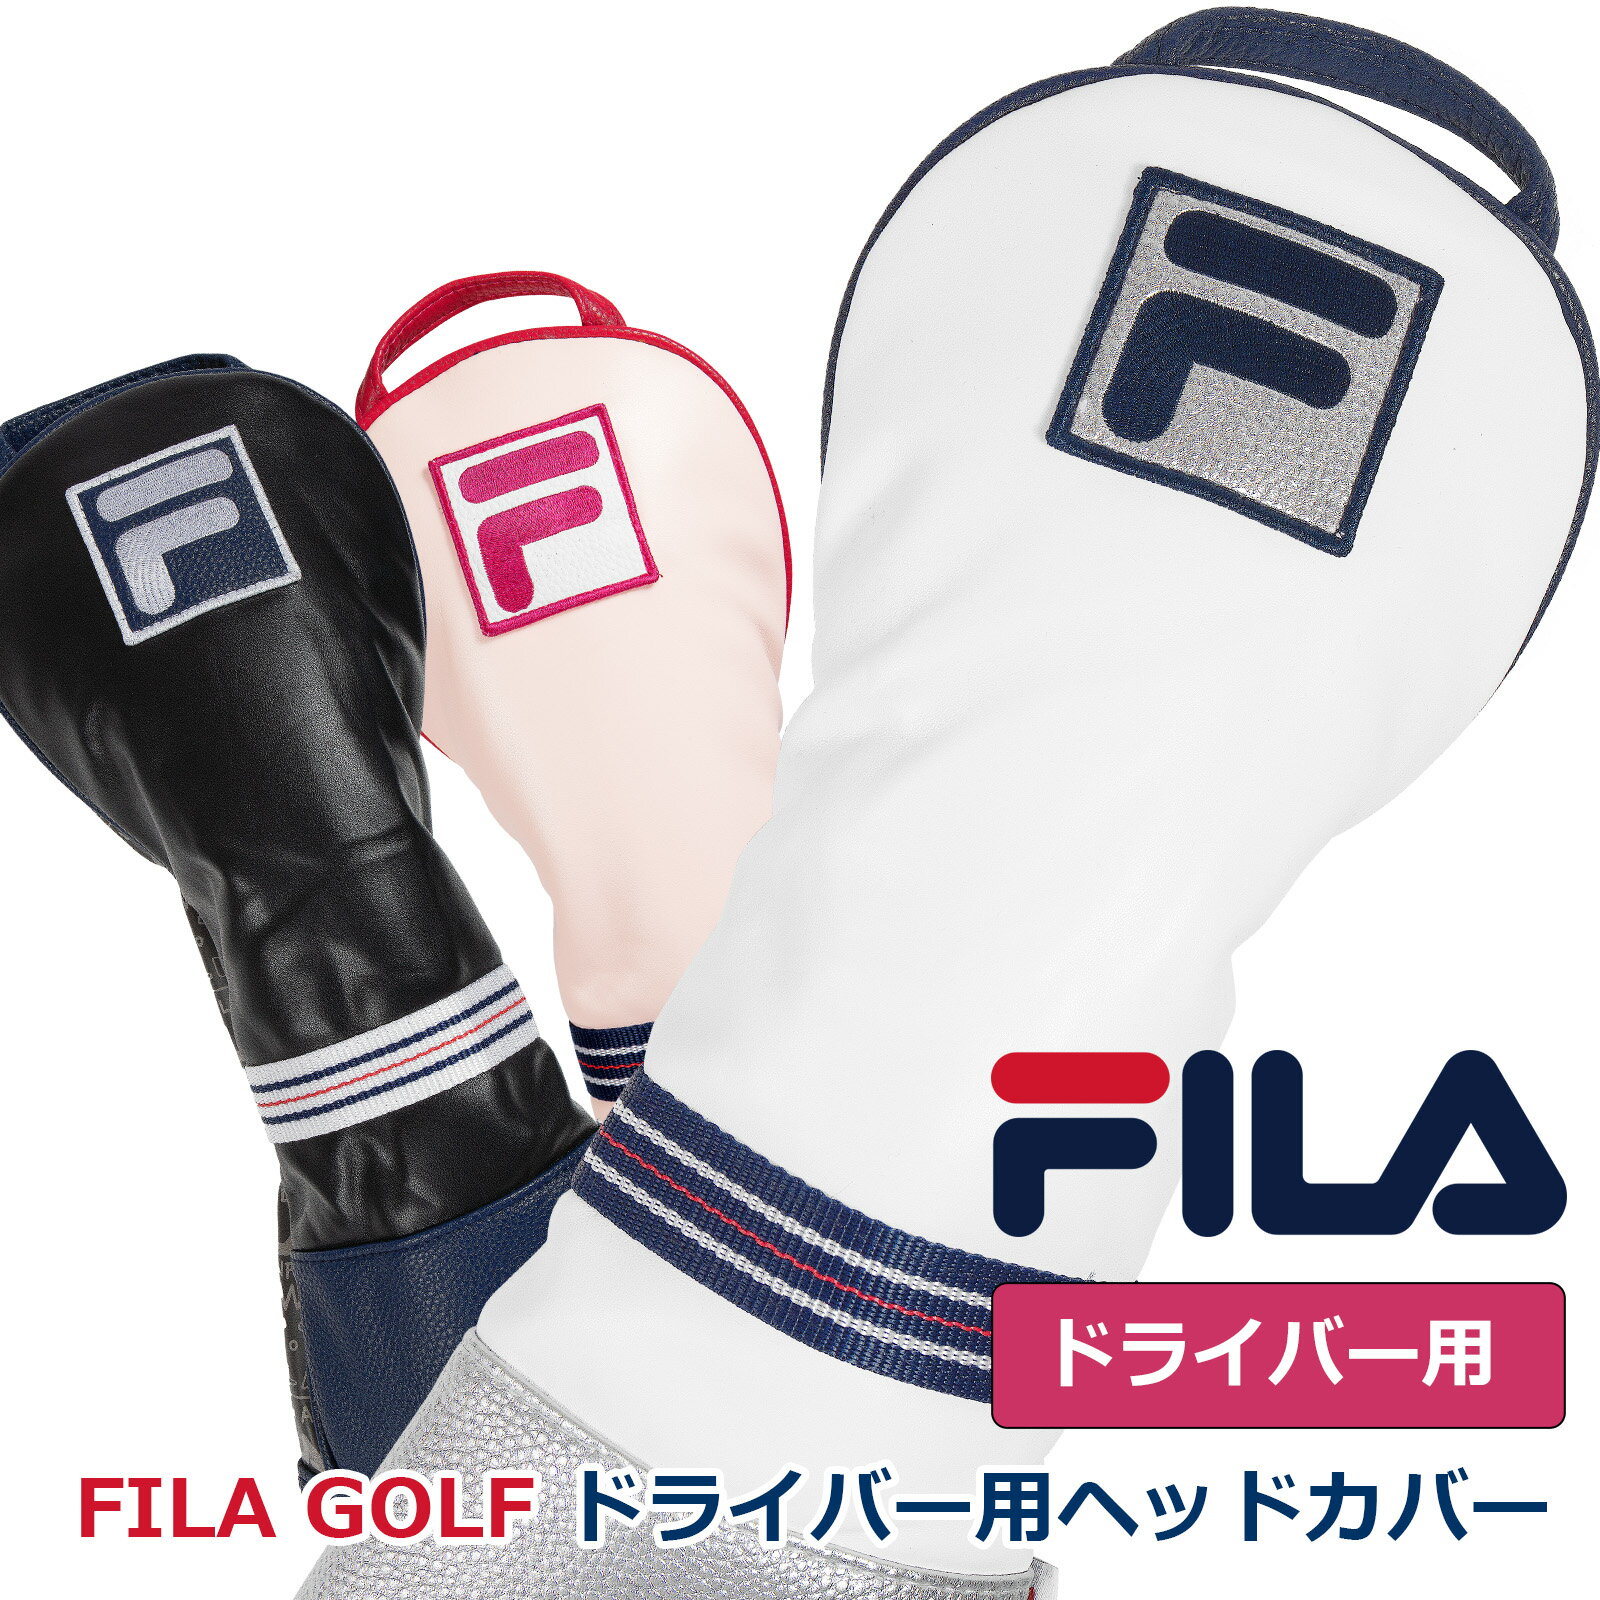 初夏のゴルフ激安セール　ゴルフ 有名ブランド FILA ドライバー用 クッション性のあるヘッドカバー メンズレディース兼用 もふもふのソフトな触り心地 ウッド ヘッド保護 シンプルなソックスタイプ かさ張らない シリーズ